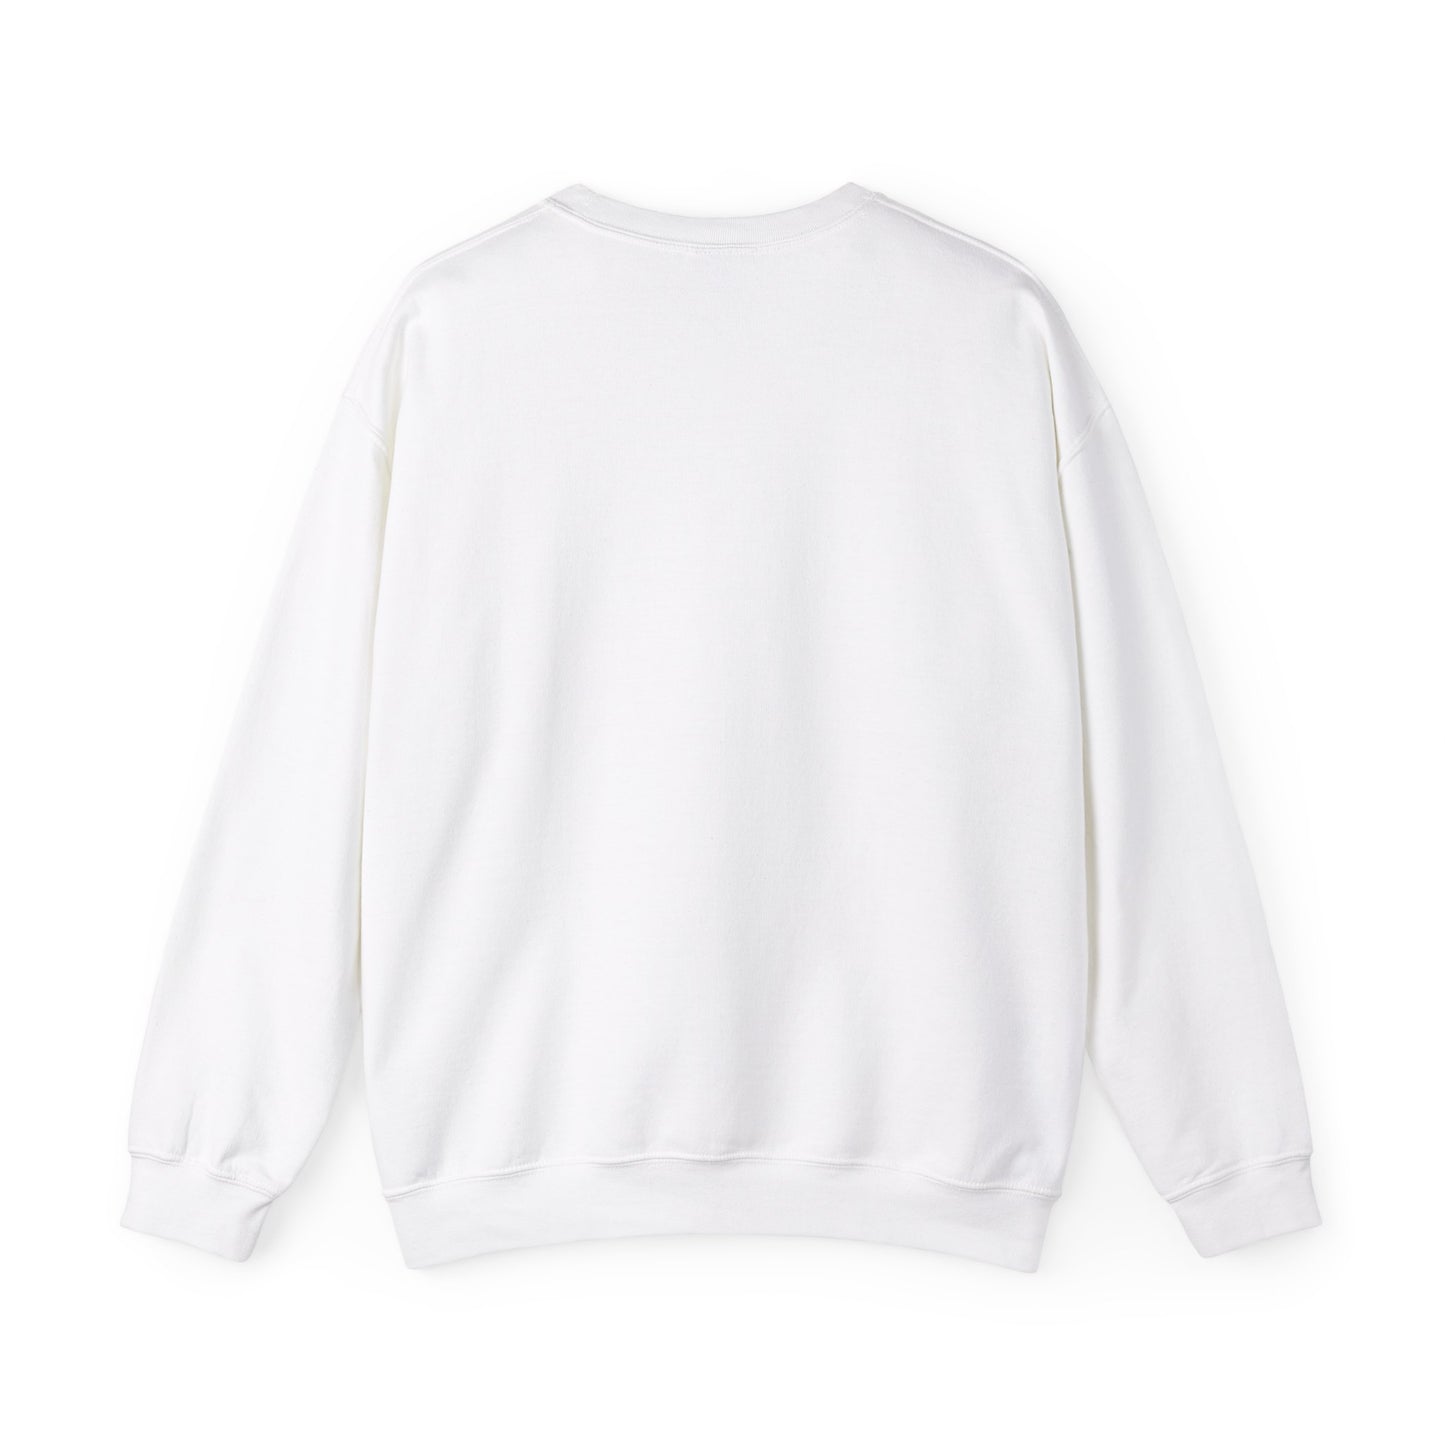 Feel-Joy Unisex Heavy Blend™ Crewneck Sweatshirt